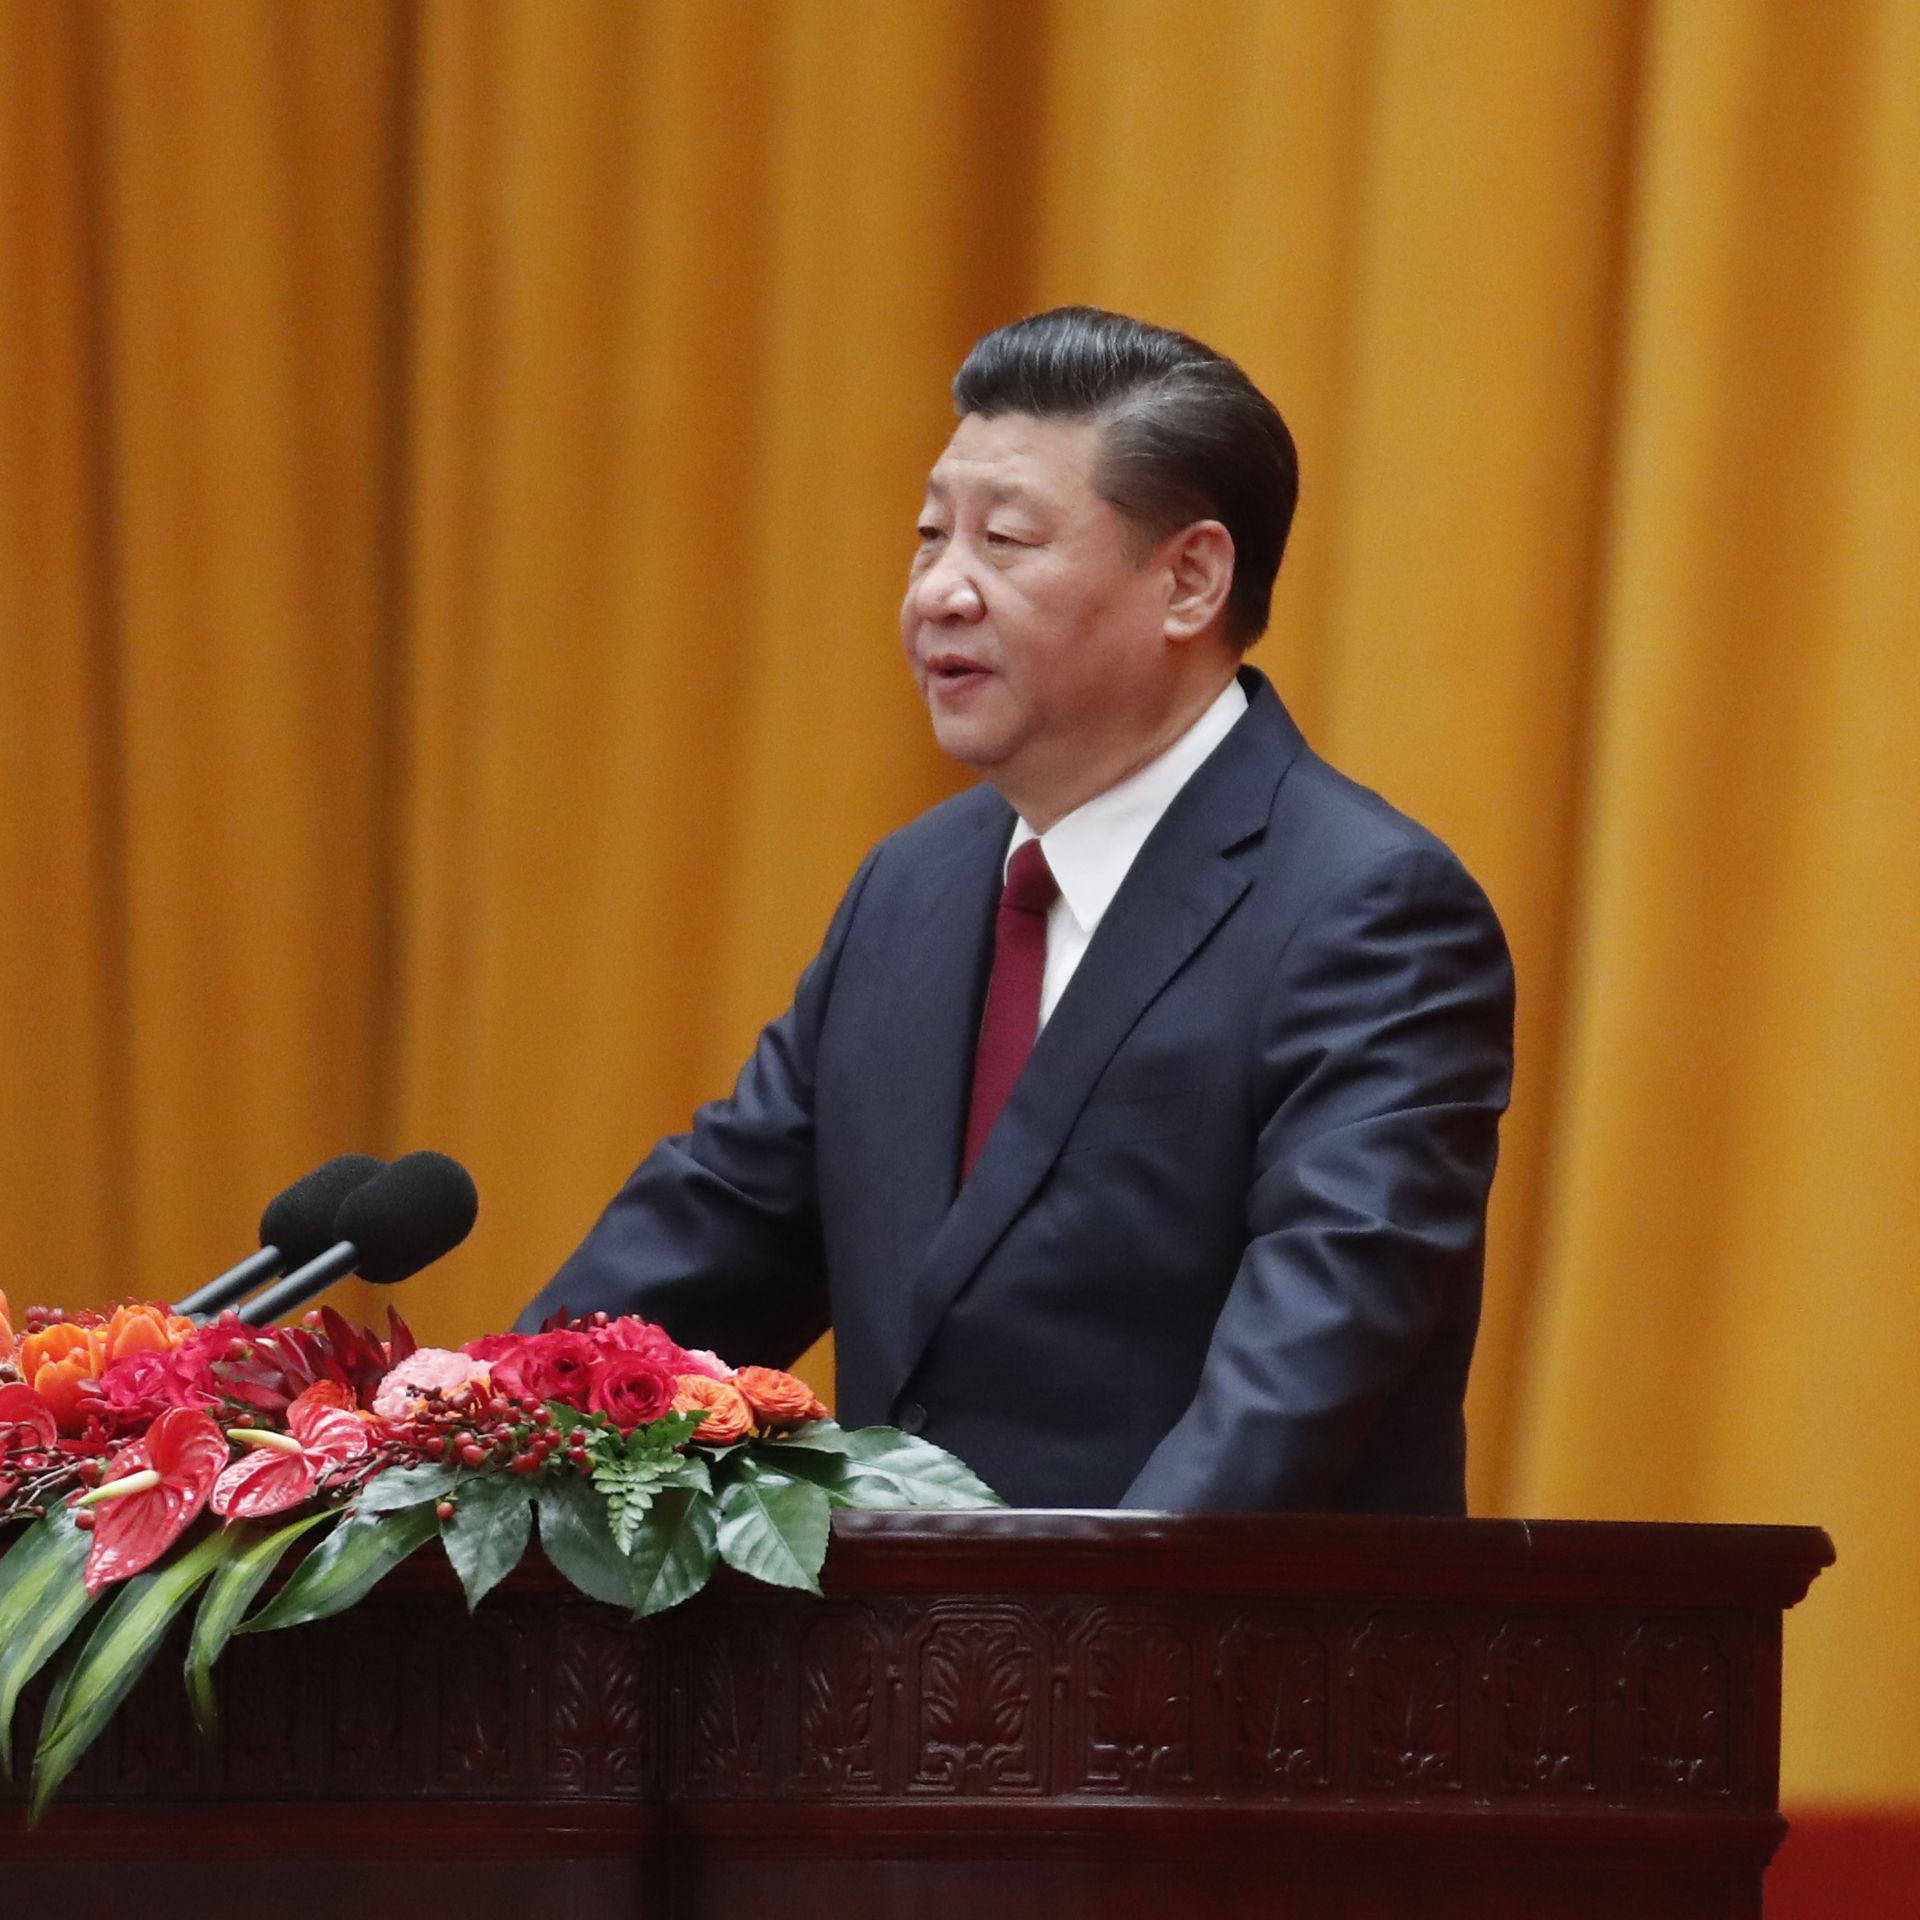 Xi Jinping at lectern